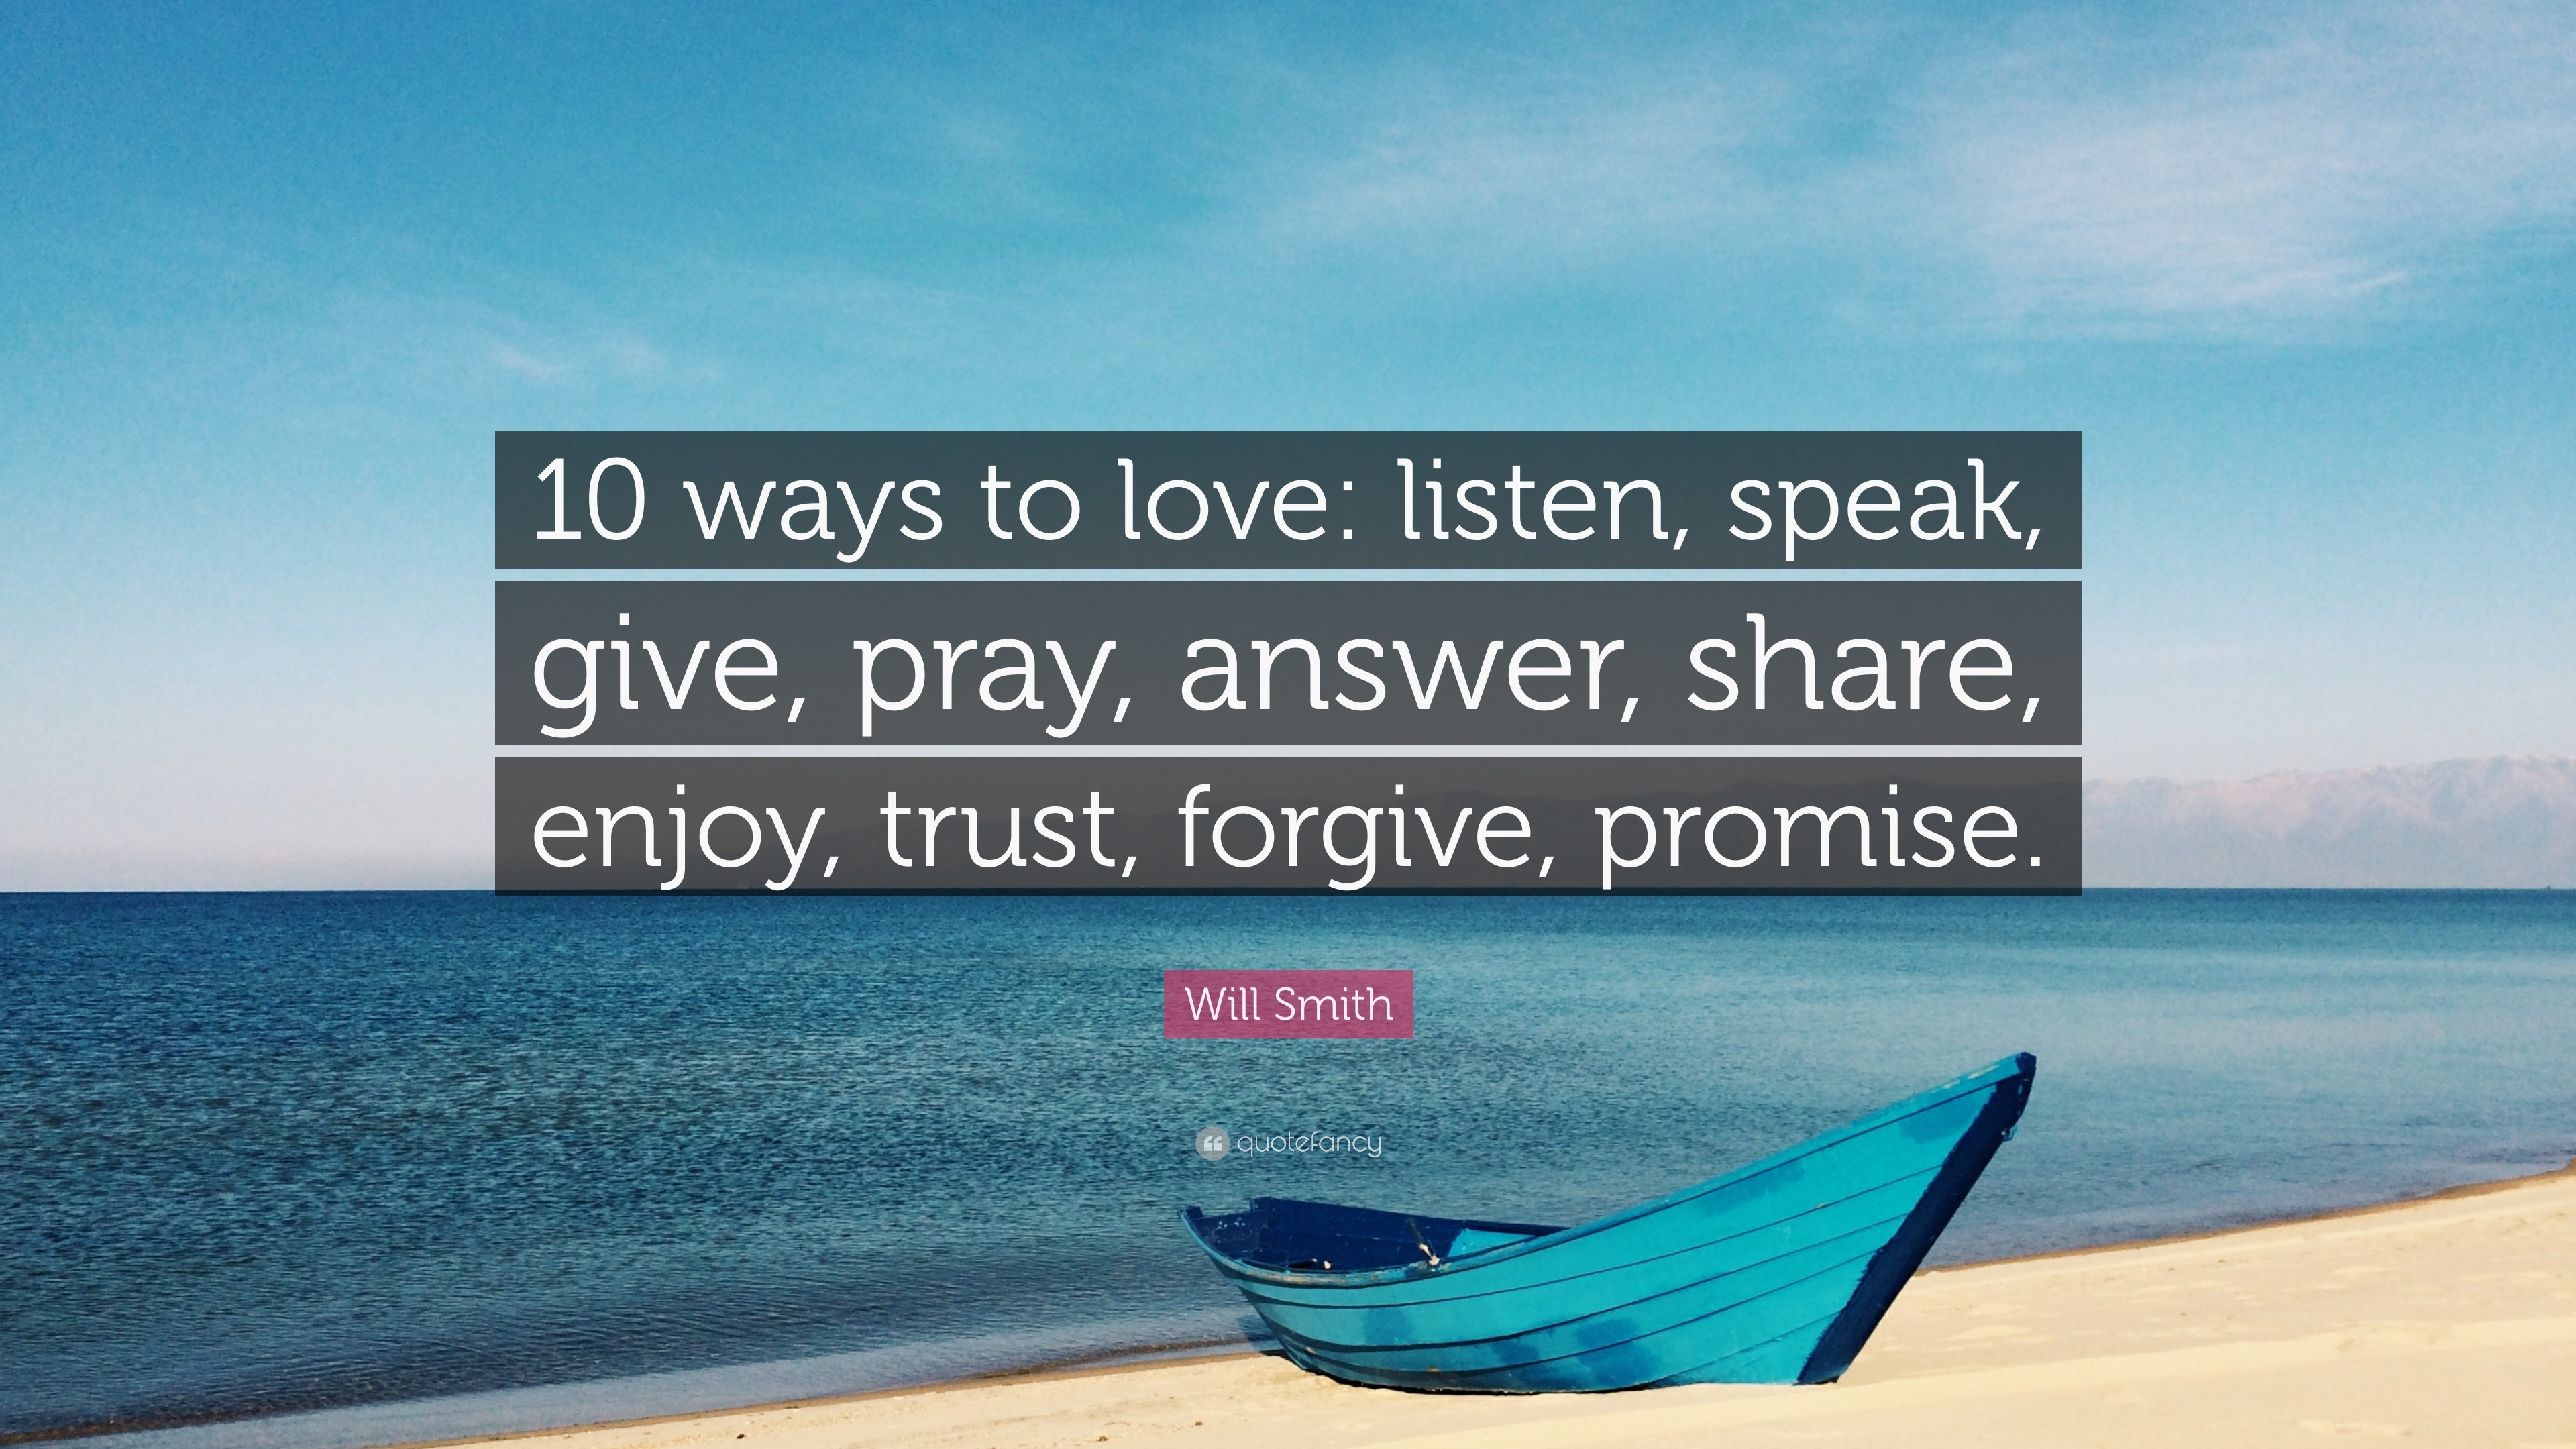 Will Smith Quote “10 ways to love listen speak give